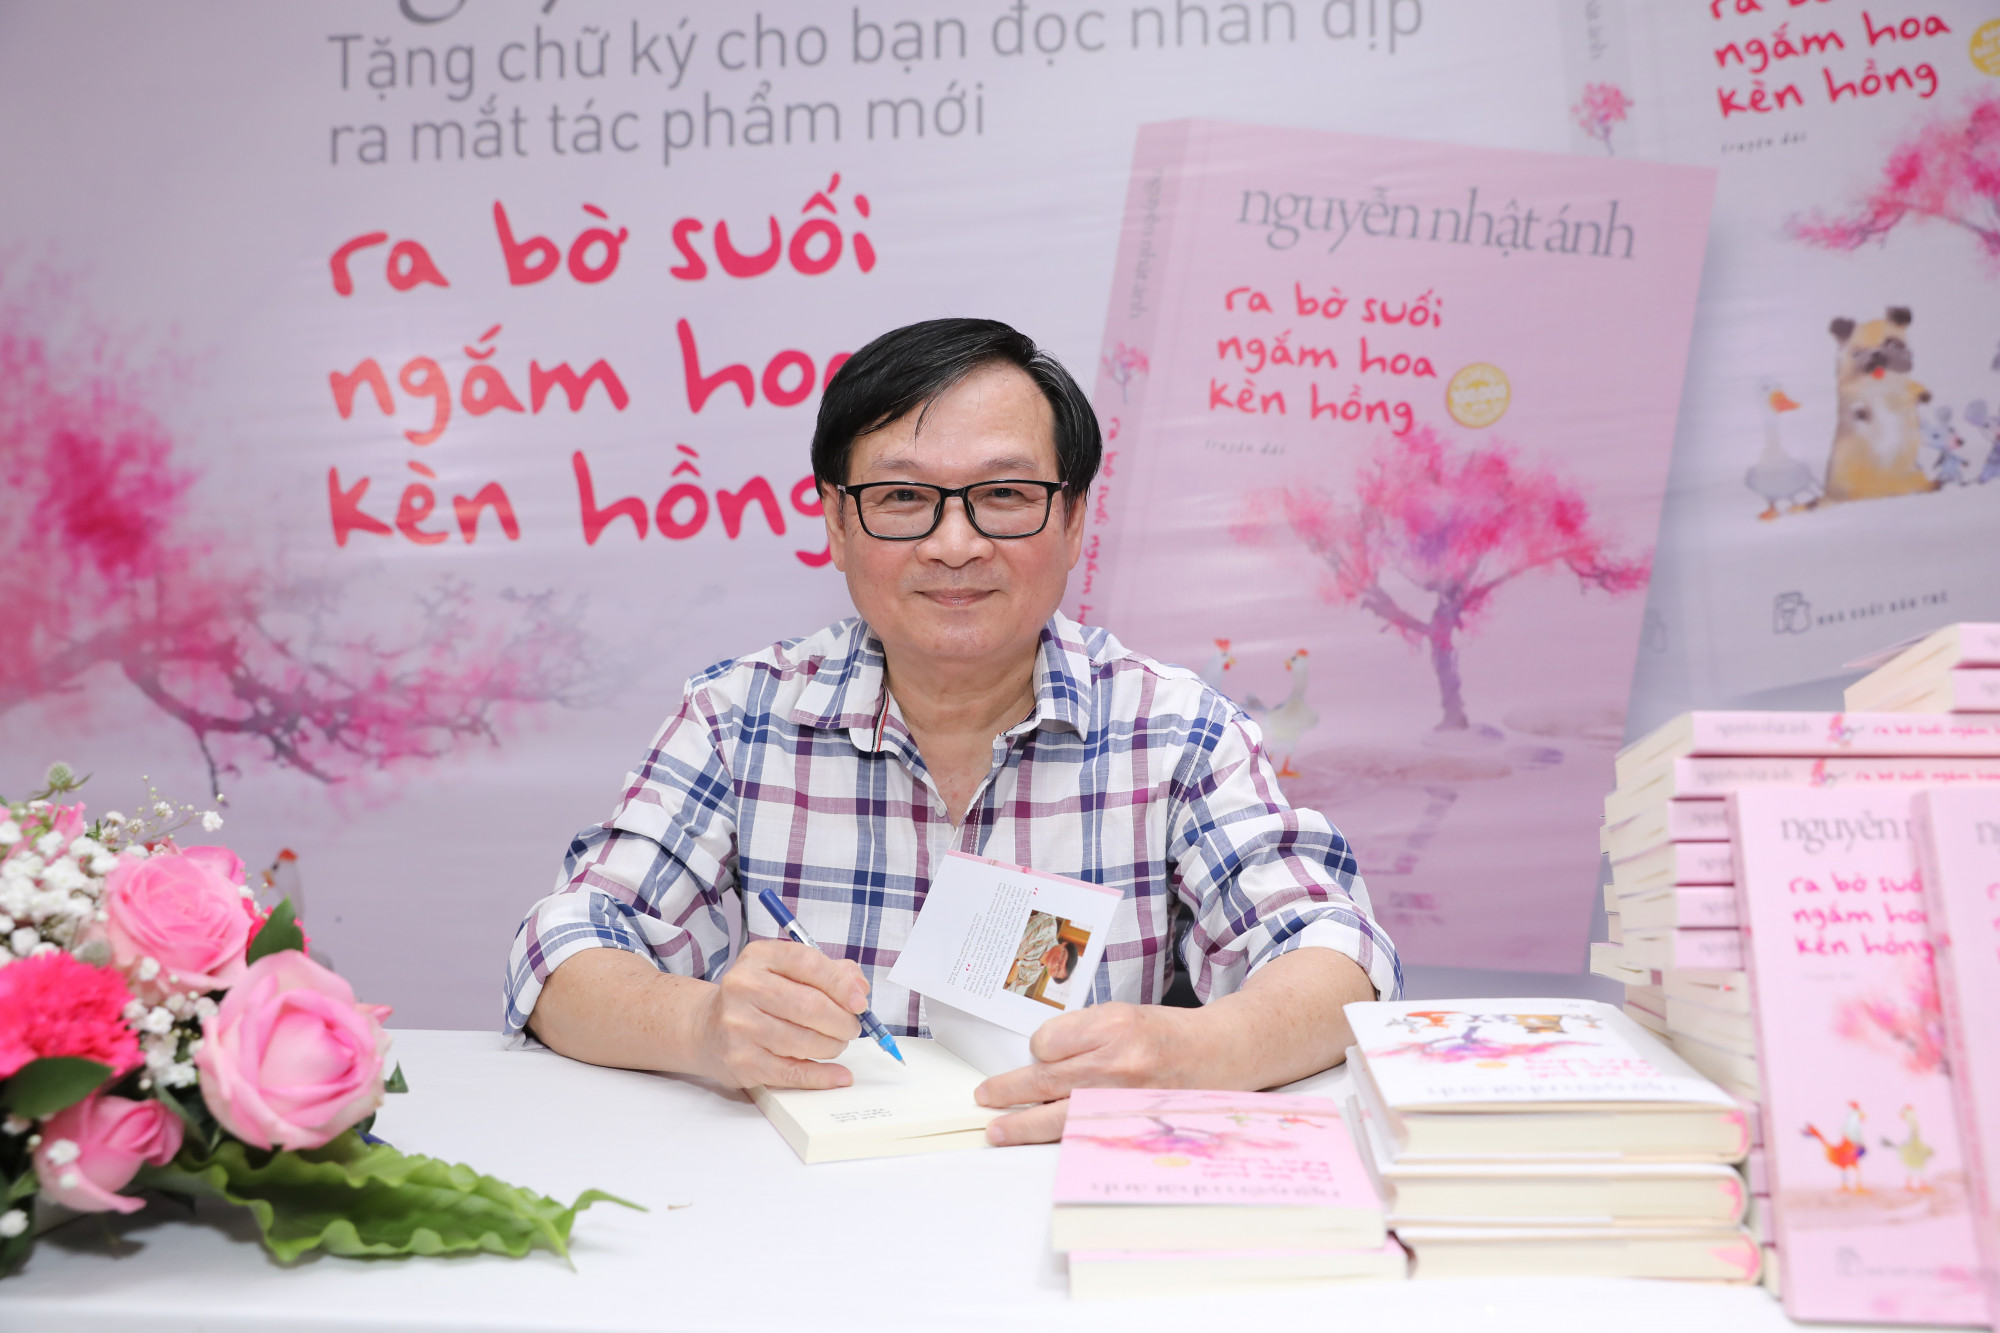 1.500 bản sách có chữ ký của nhà văn Nguyễn Nhật Ánh sẽ được bán vào ngày 16/1